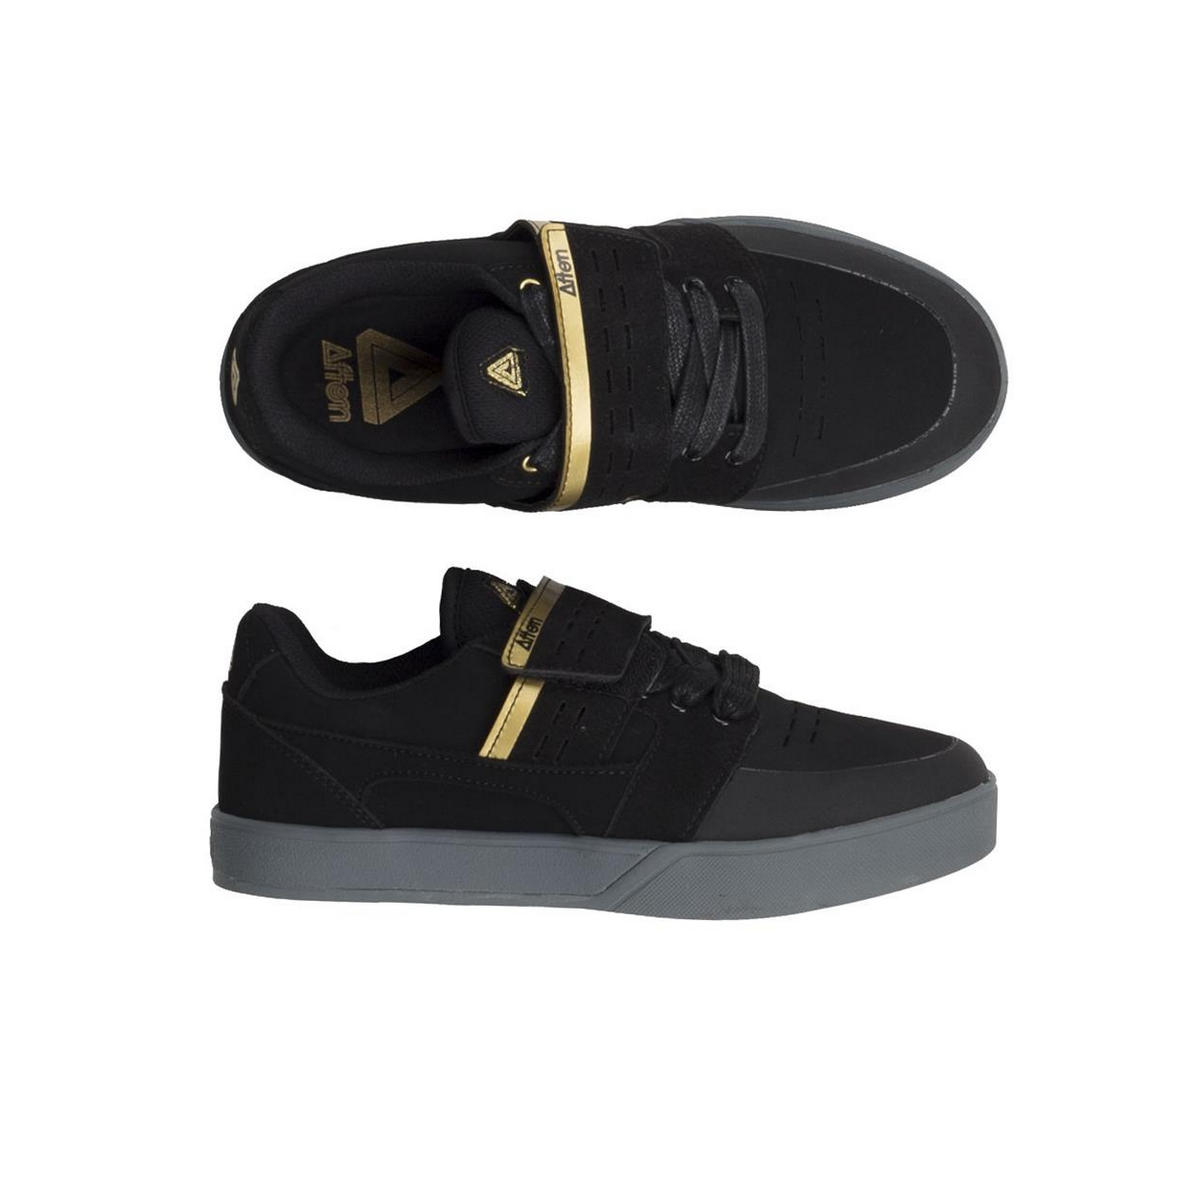 MTB Shoes Vectal SPD Black/Gold Size 43